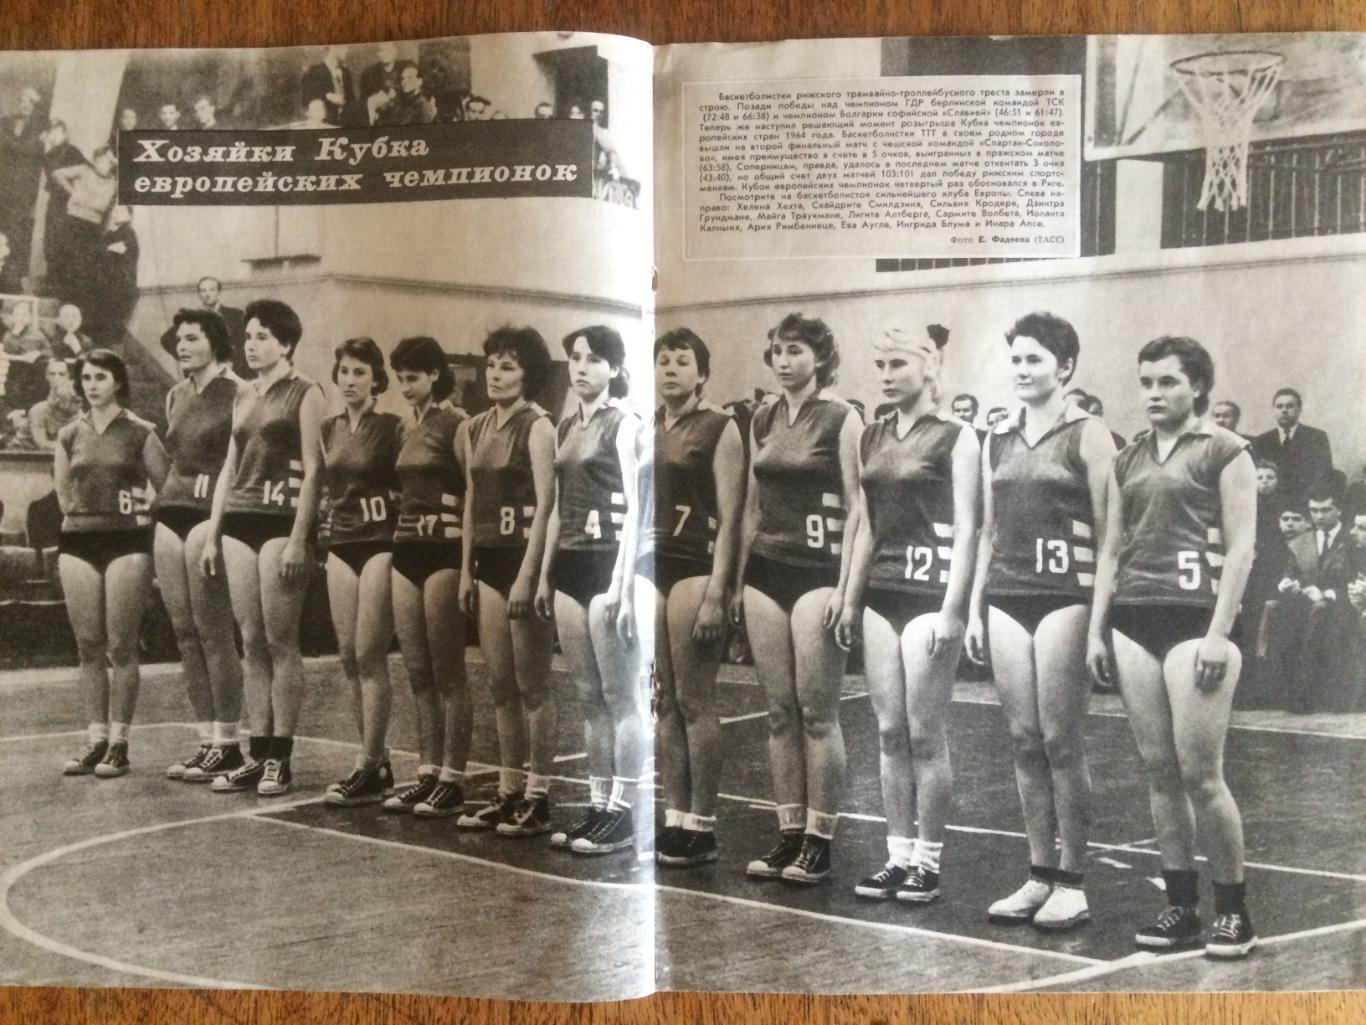 Журнал Спортивные игры №4 1964 1